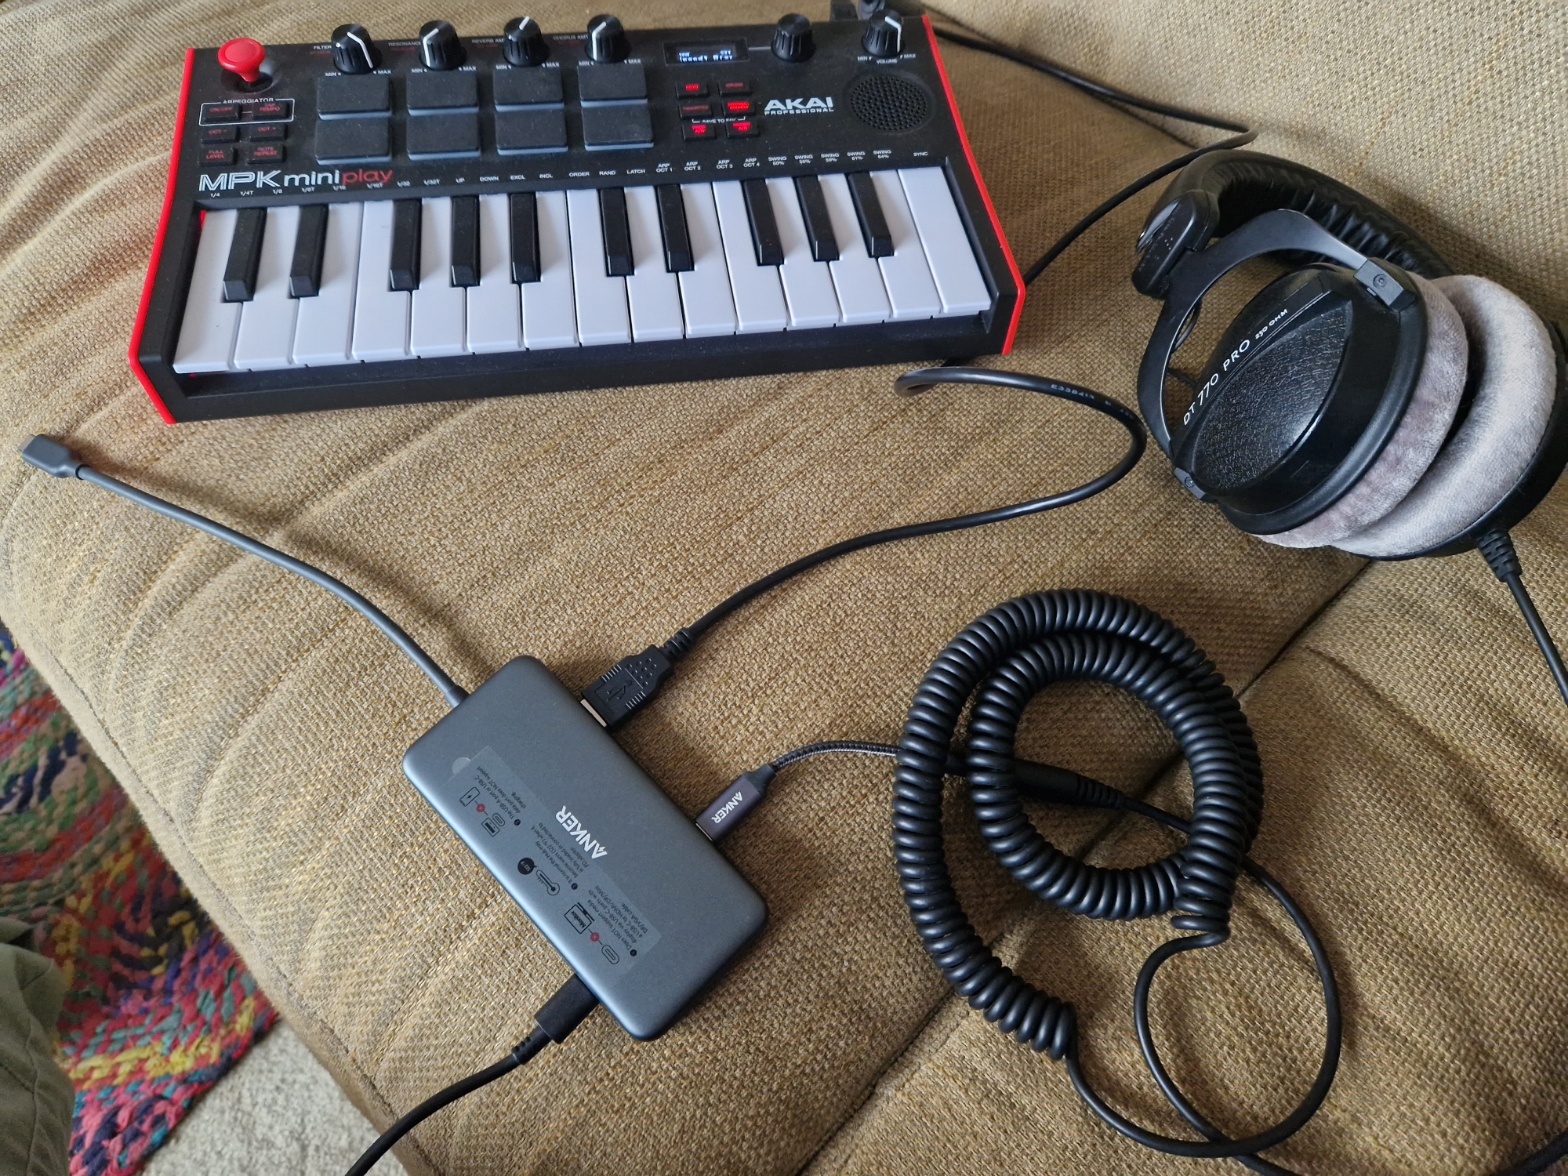 Android MIDI setup